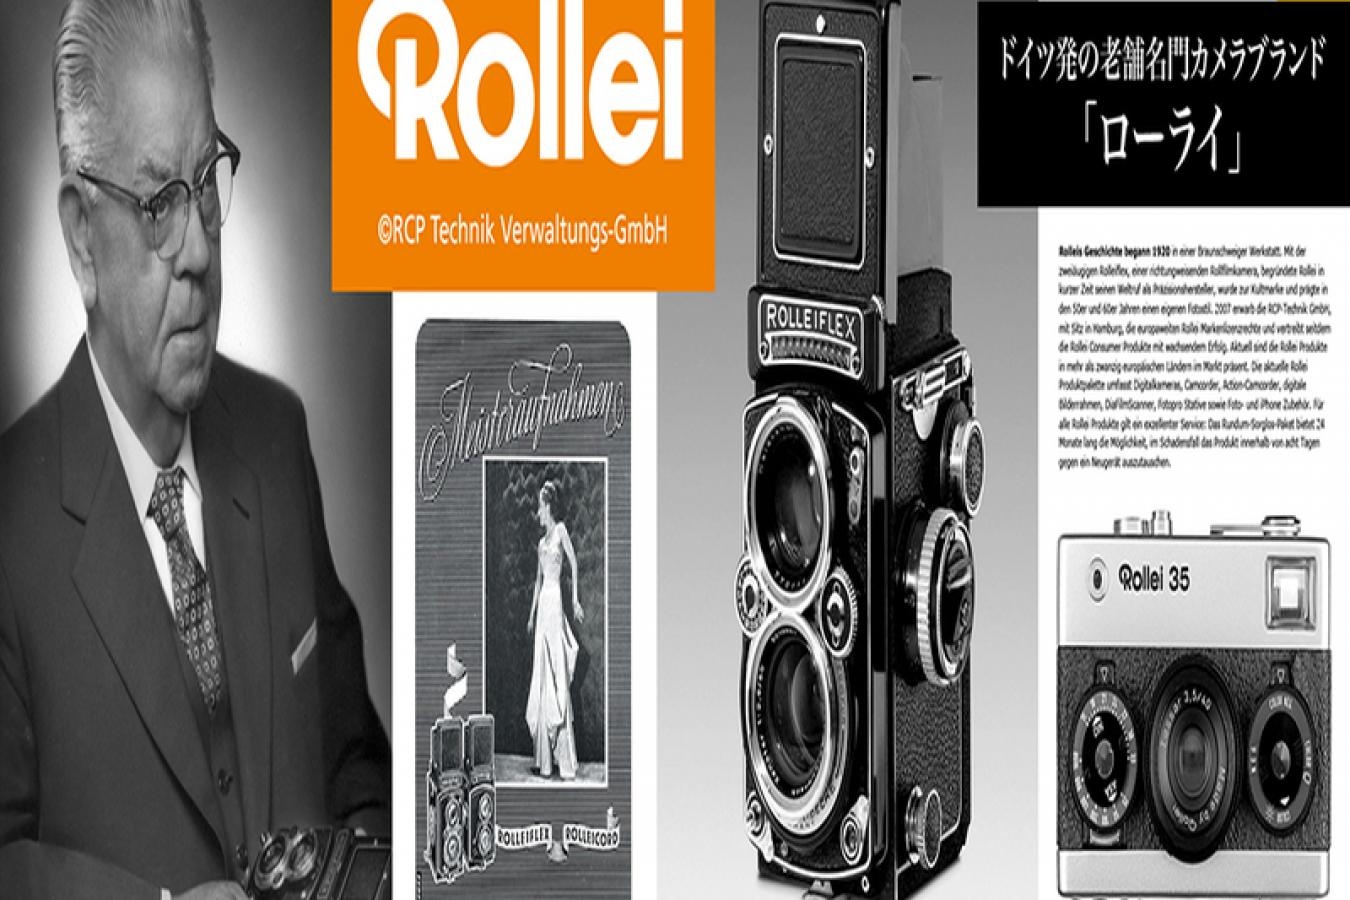 【新 品】Rollei エナメルトート Rollei35【Rollei 公式グッズ】